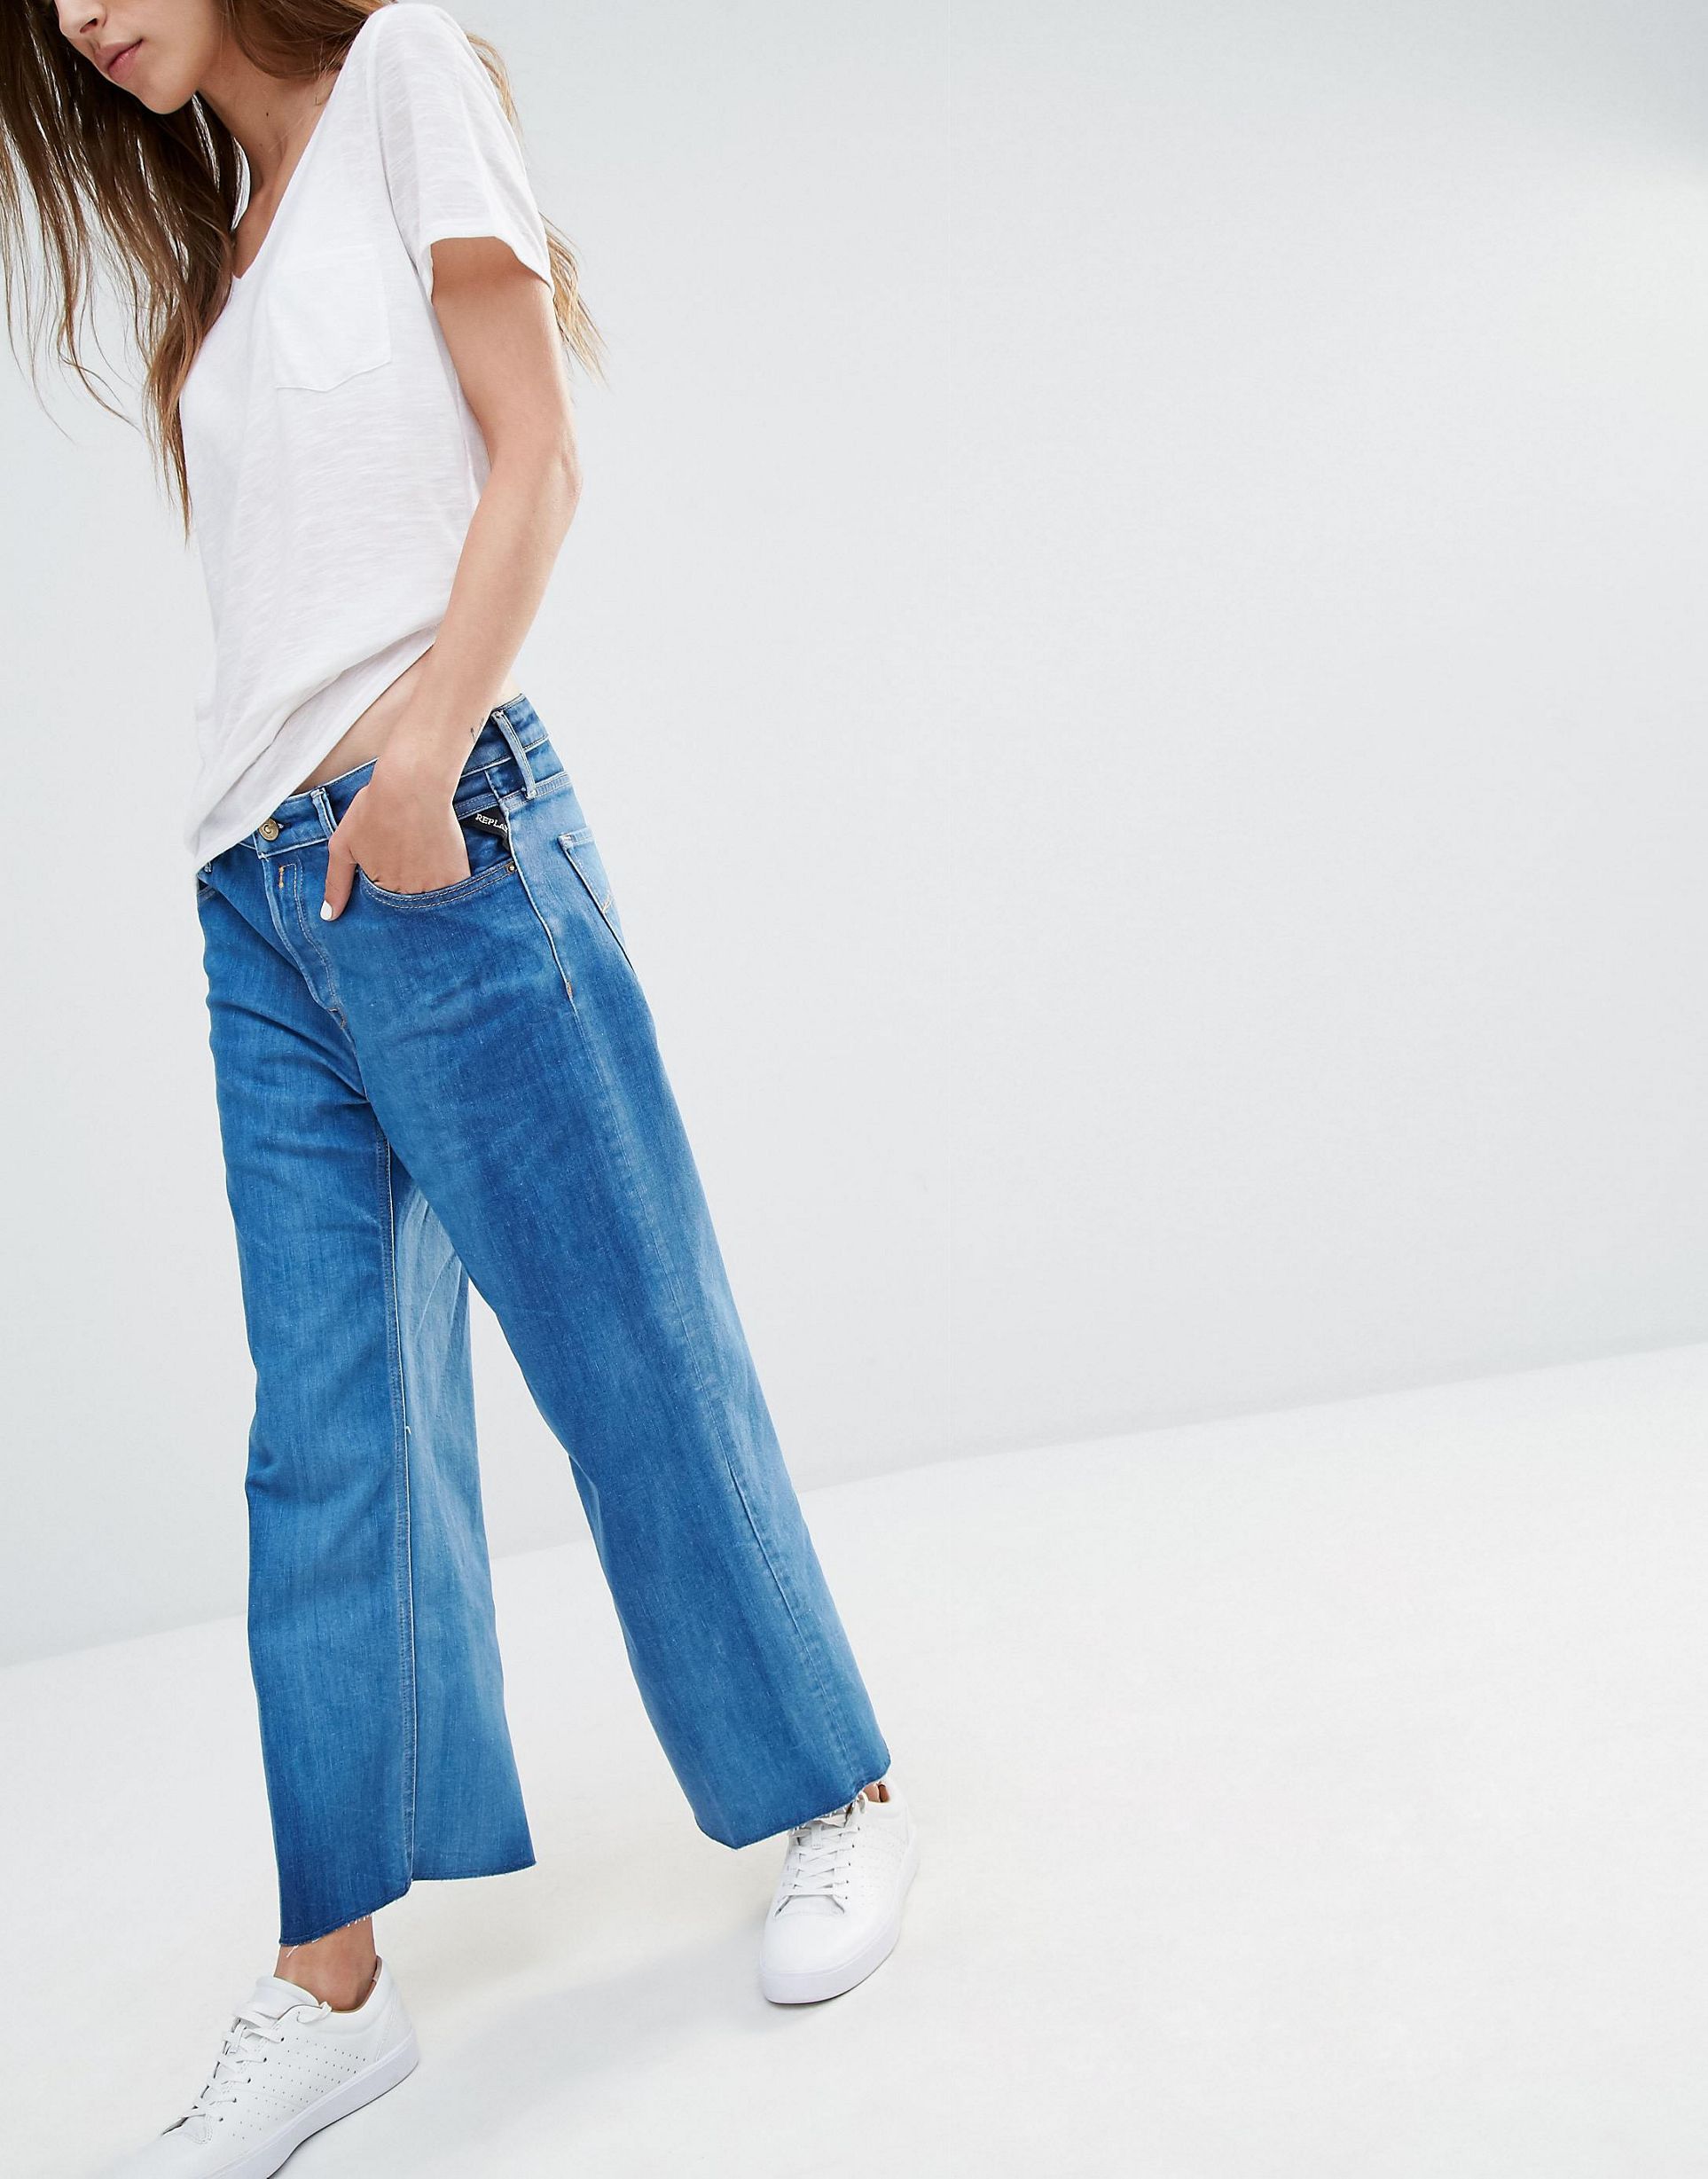 Прямые широкие джинсы